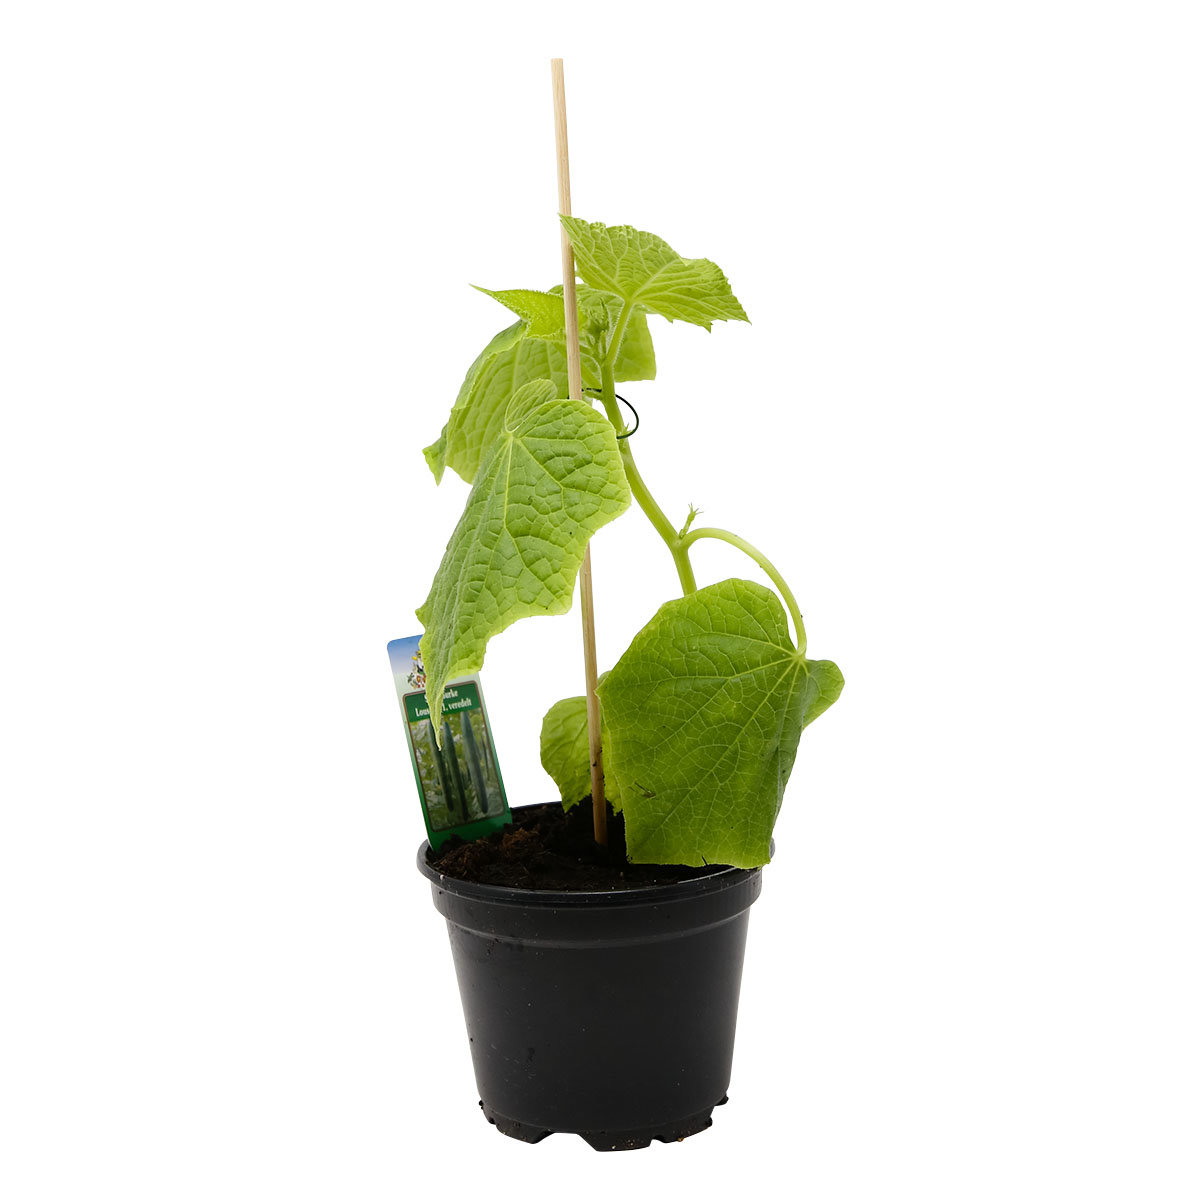 Gurkenpflanze Gambit, veredelt, im ca. 12 cm-Topf
| #3